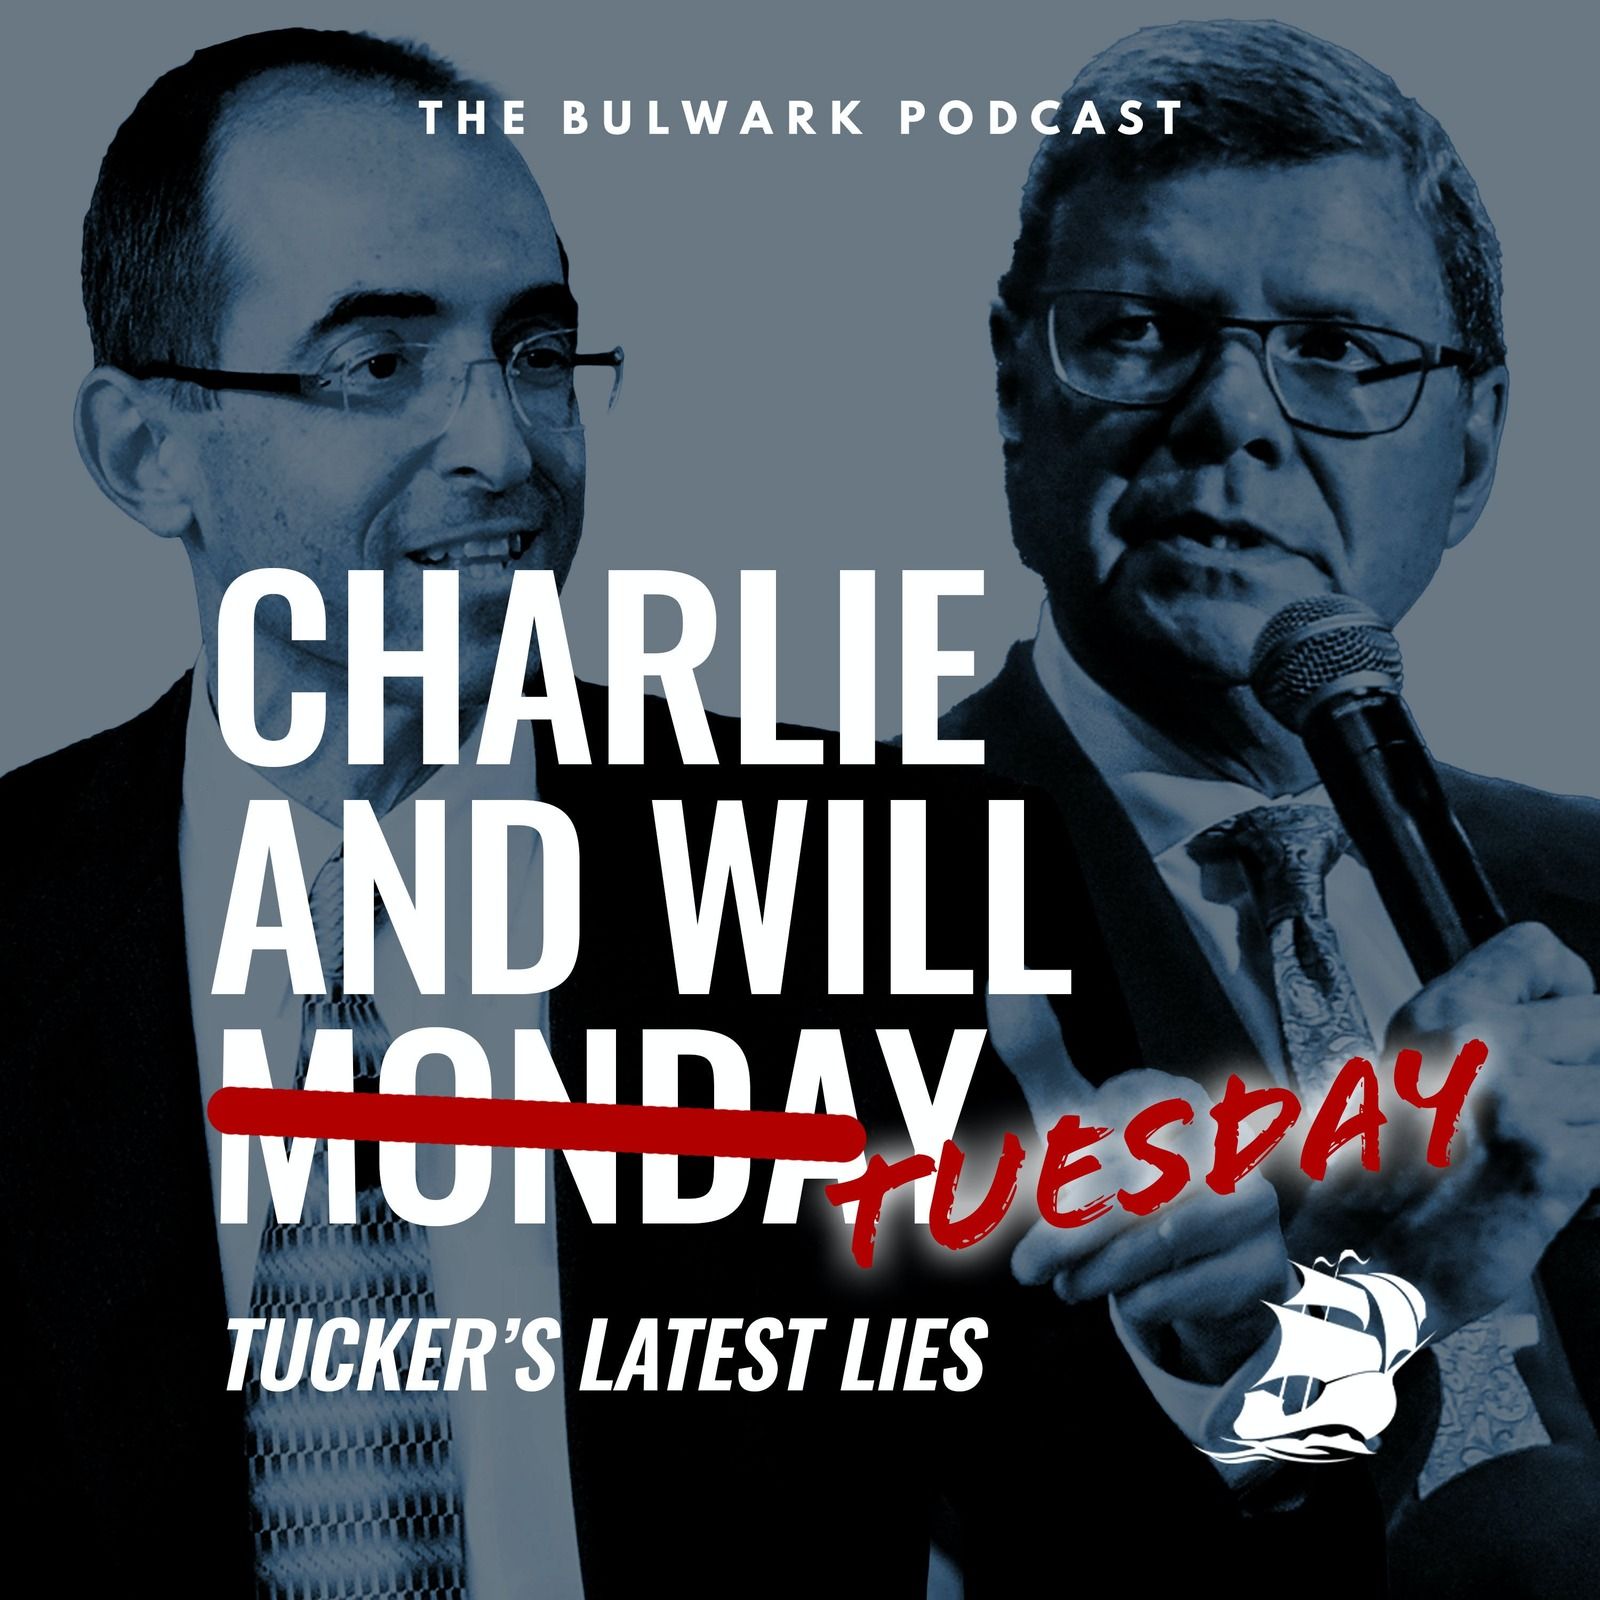 Tucker’s Latest Lies by The Bulwark Podcast